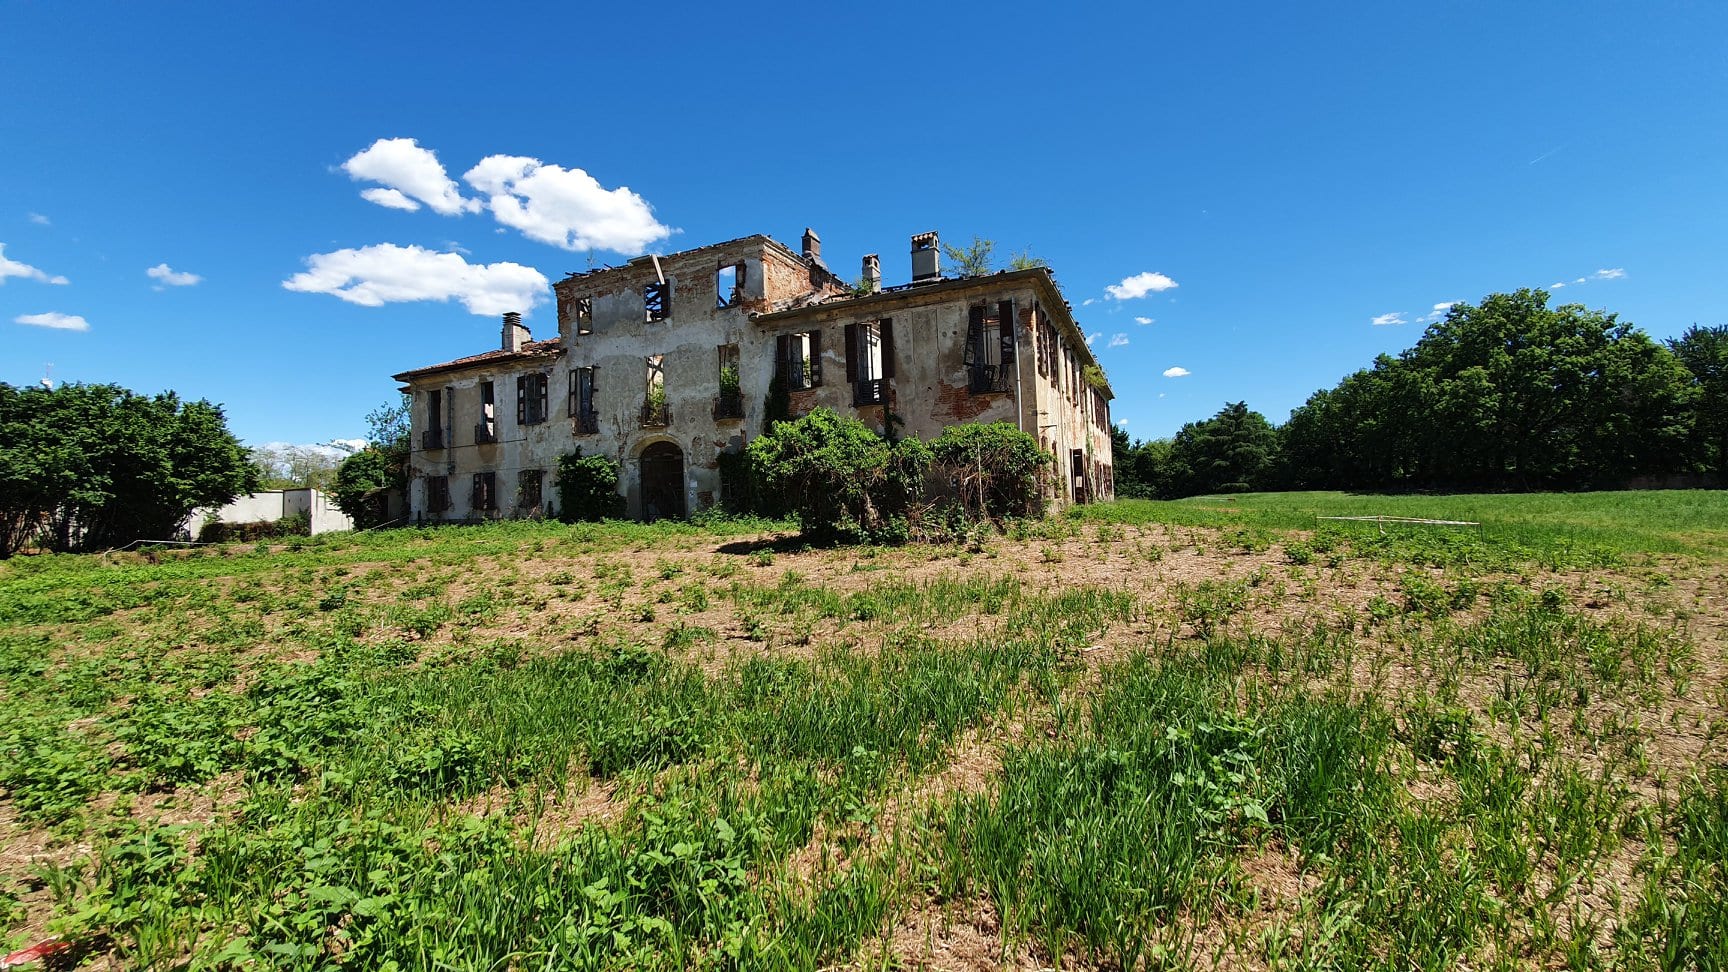 Villa Attanasio, disco verde al progetto preliminare